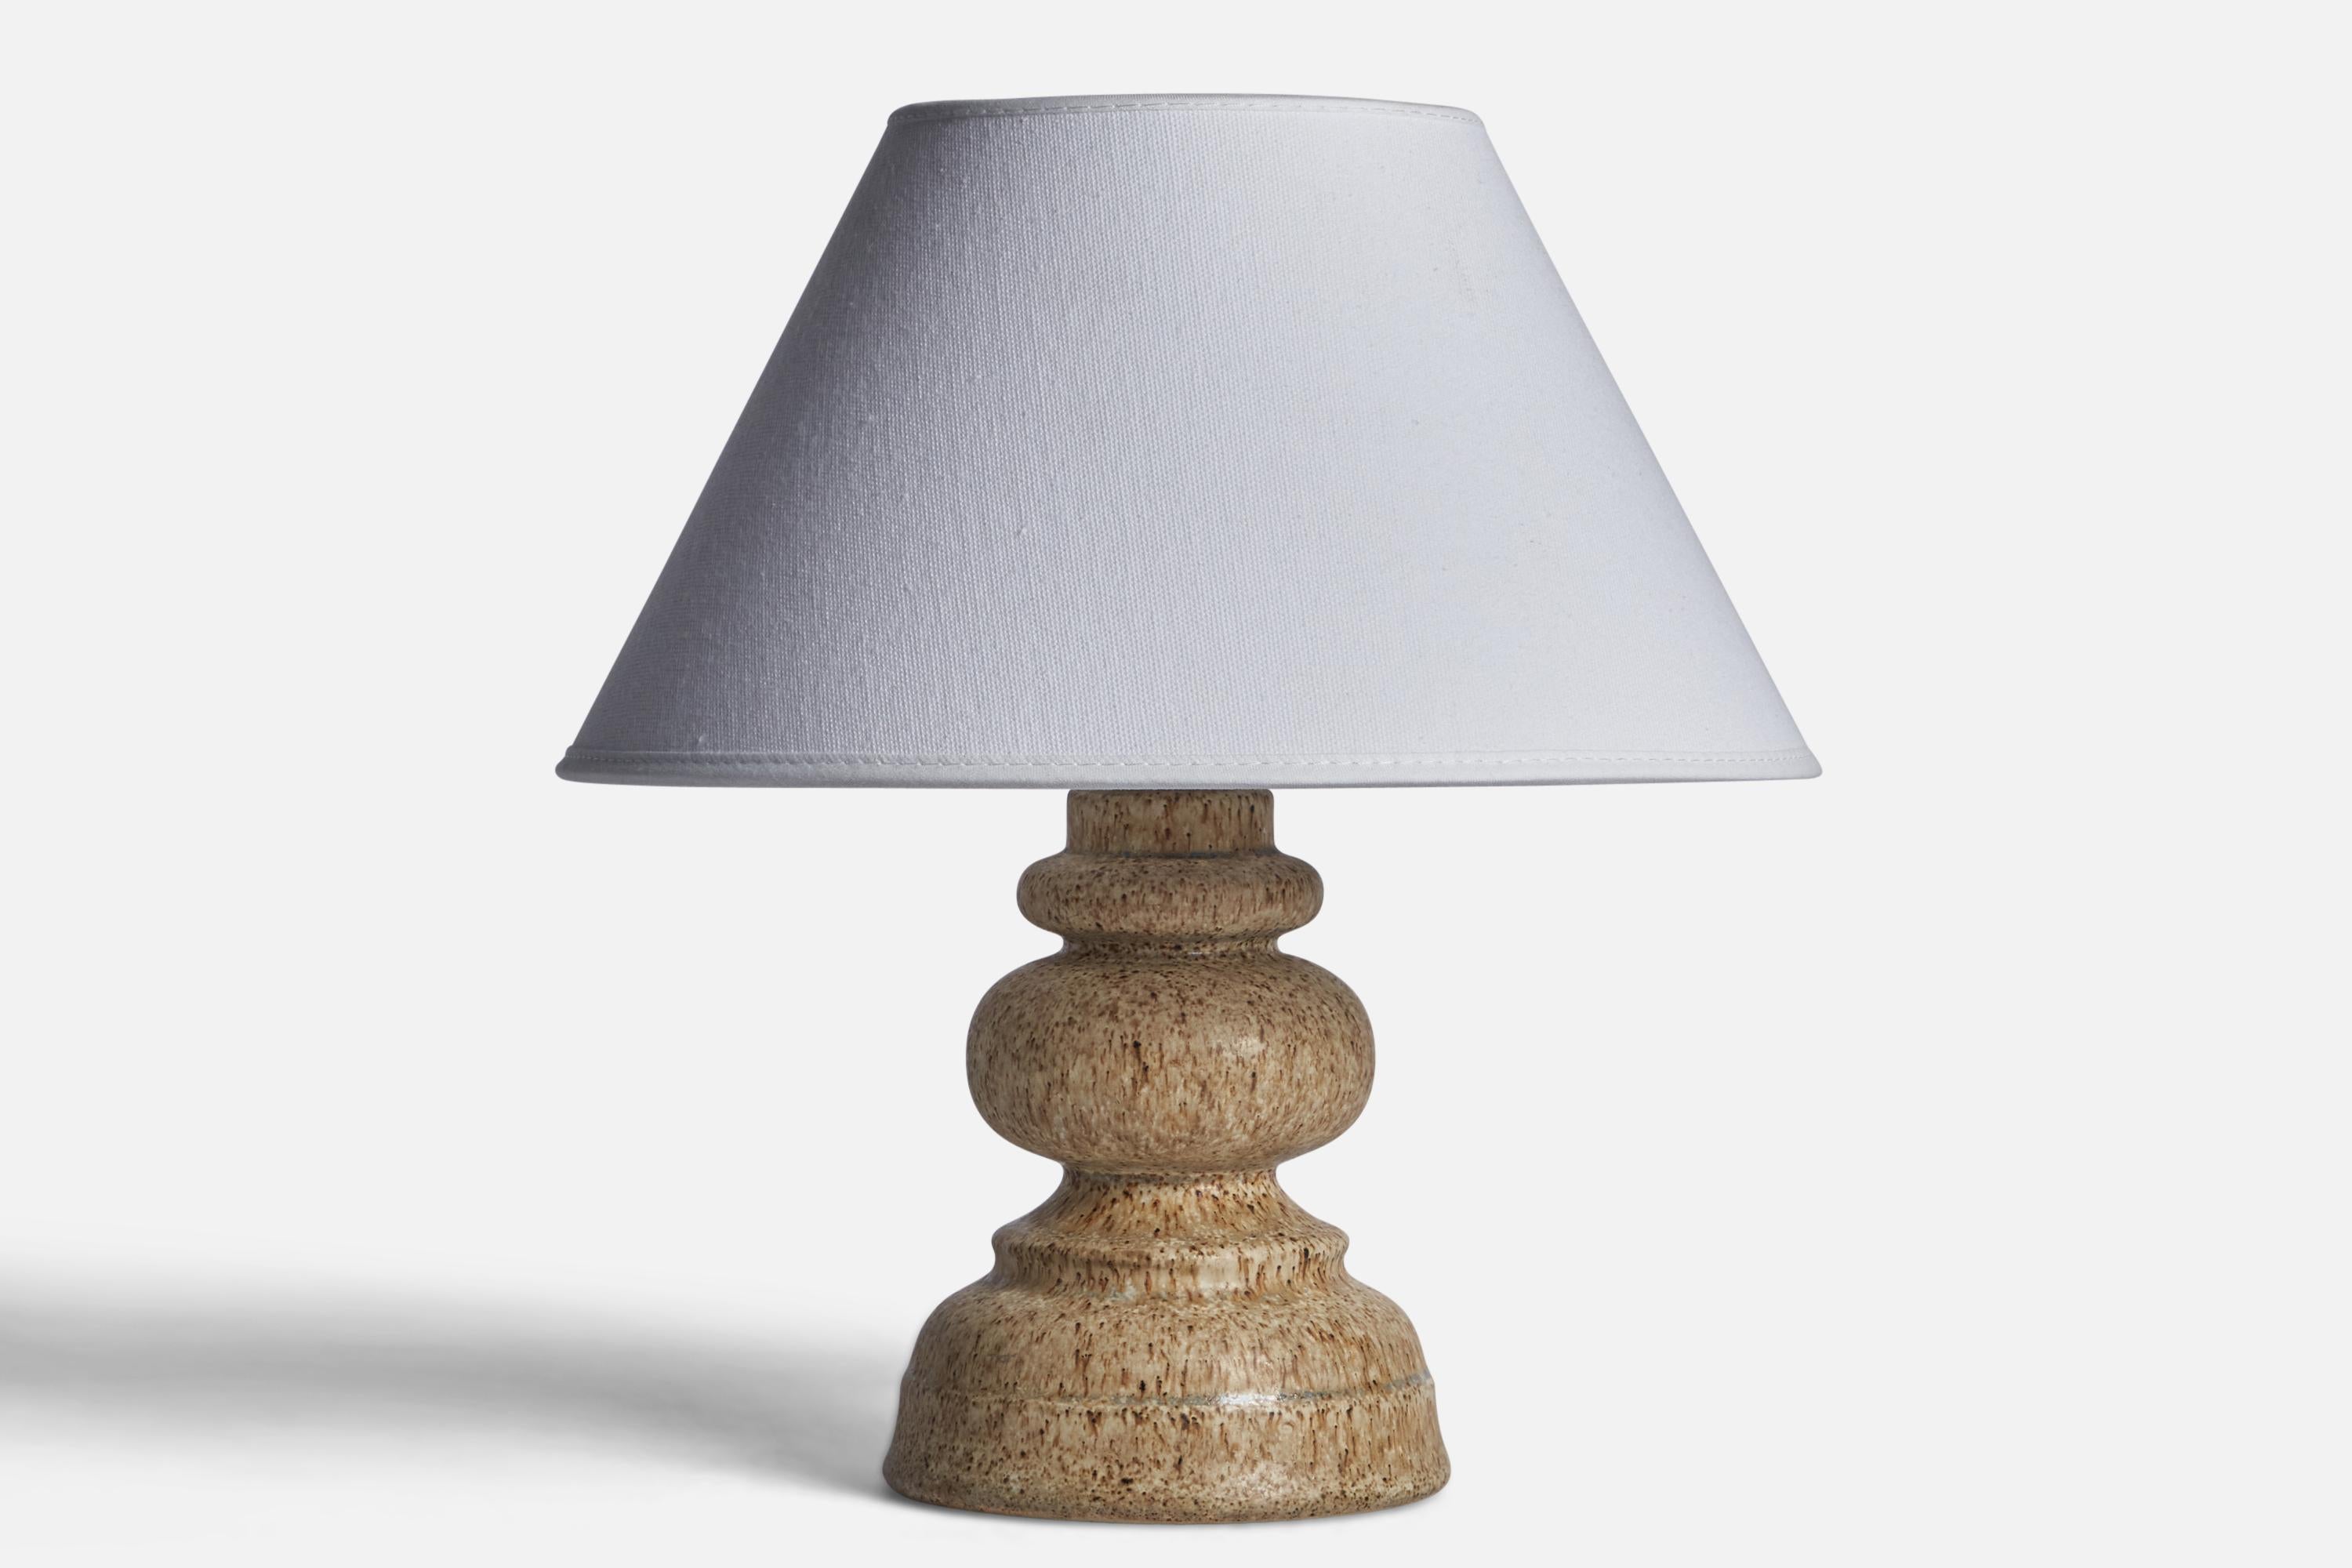 Tischlampe aus grau glasiertem Steingut, hergestellt von Ego Stengods, Schweden, ca. 1960er Jahre.

Abmessungen der Lampe (Zoll): 7,75